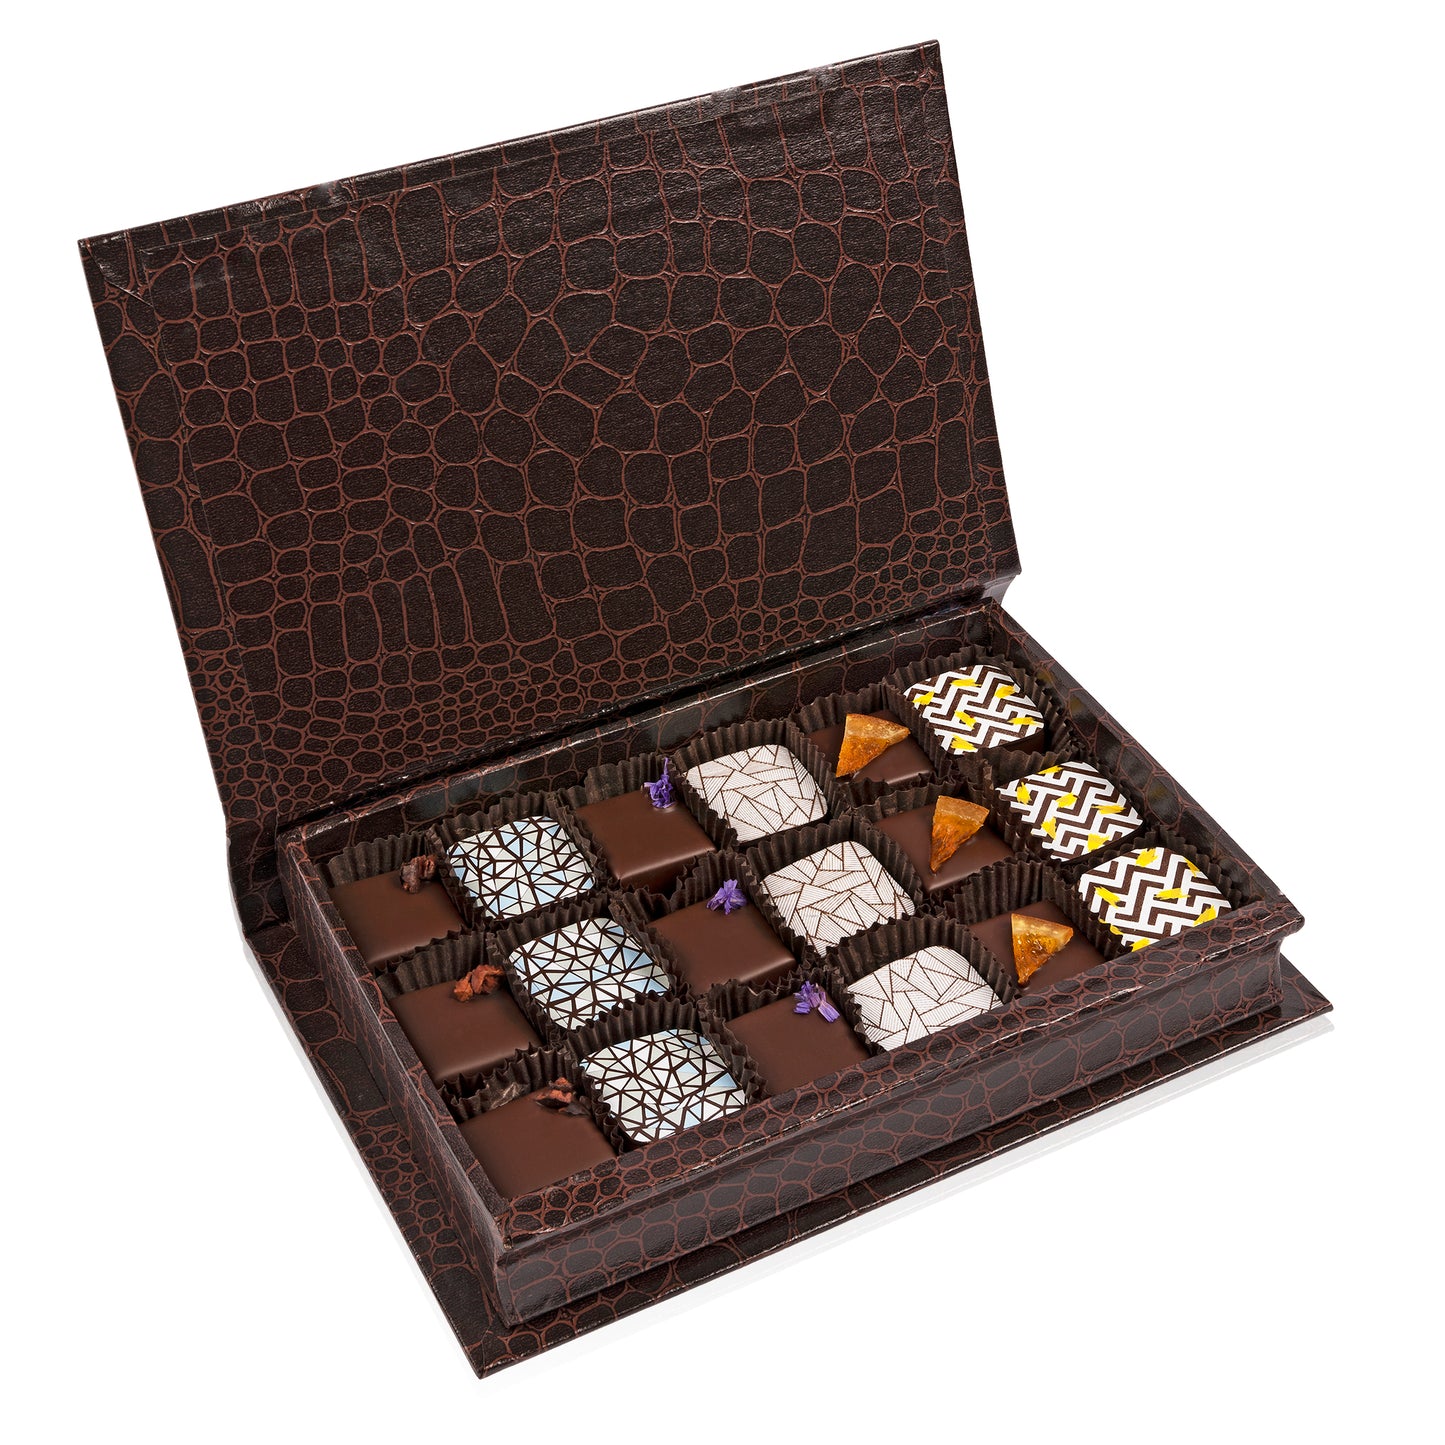 Book Gift Medium Box - 18pc chocolate truffles